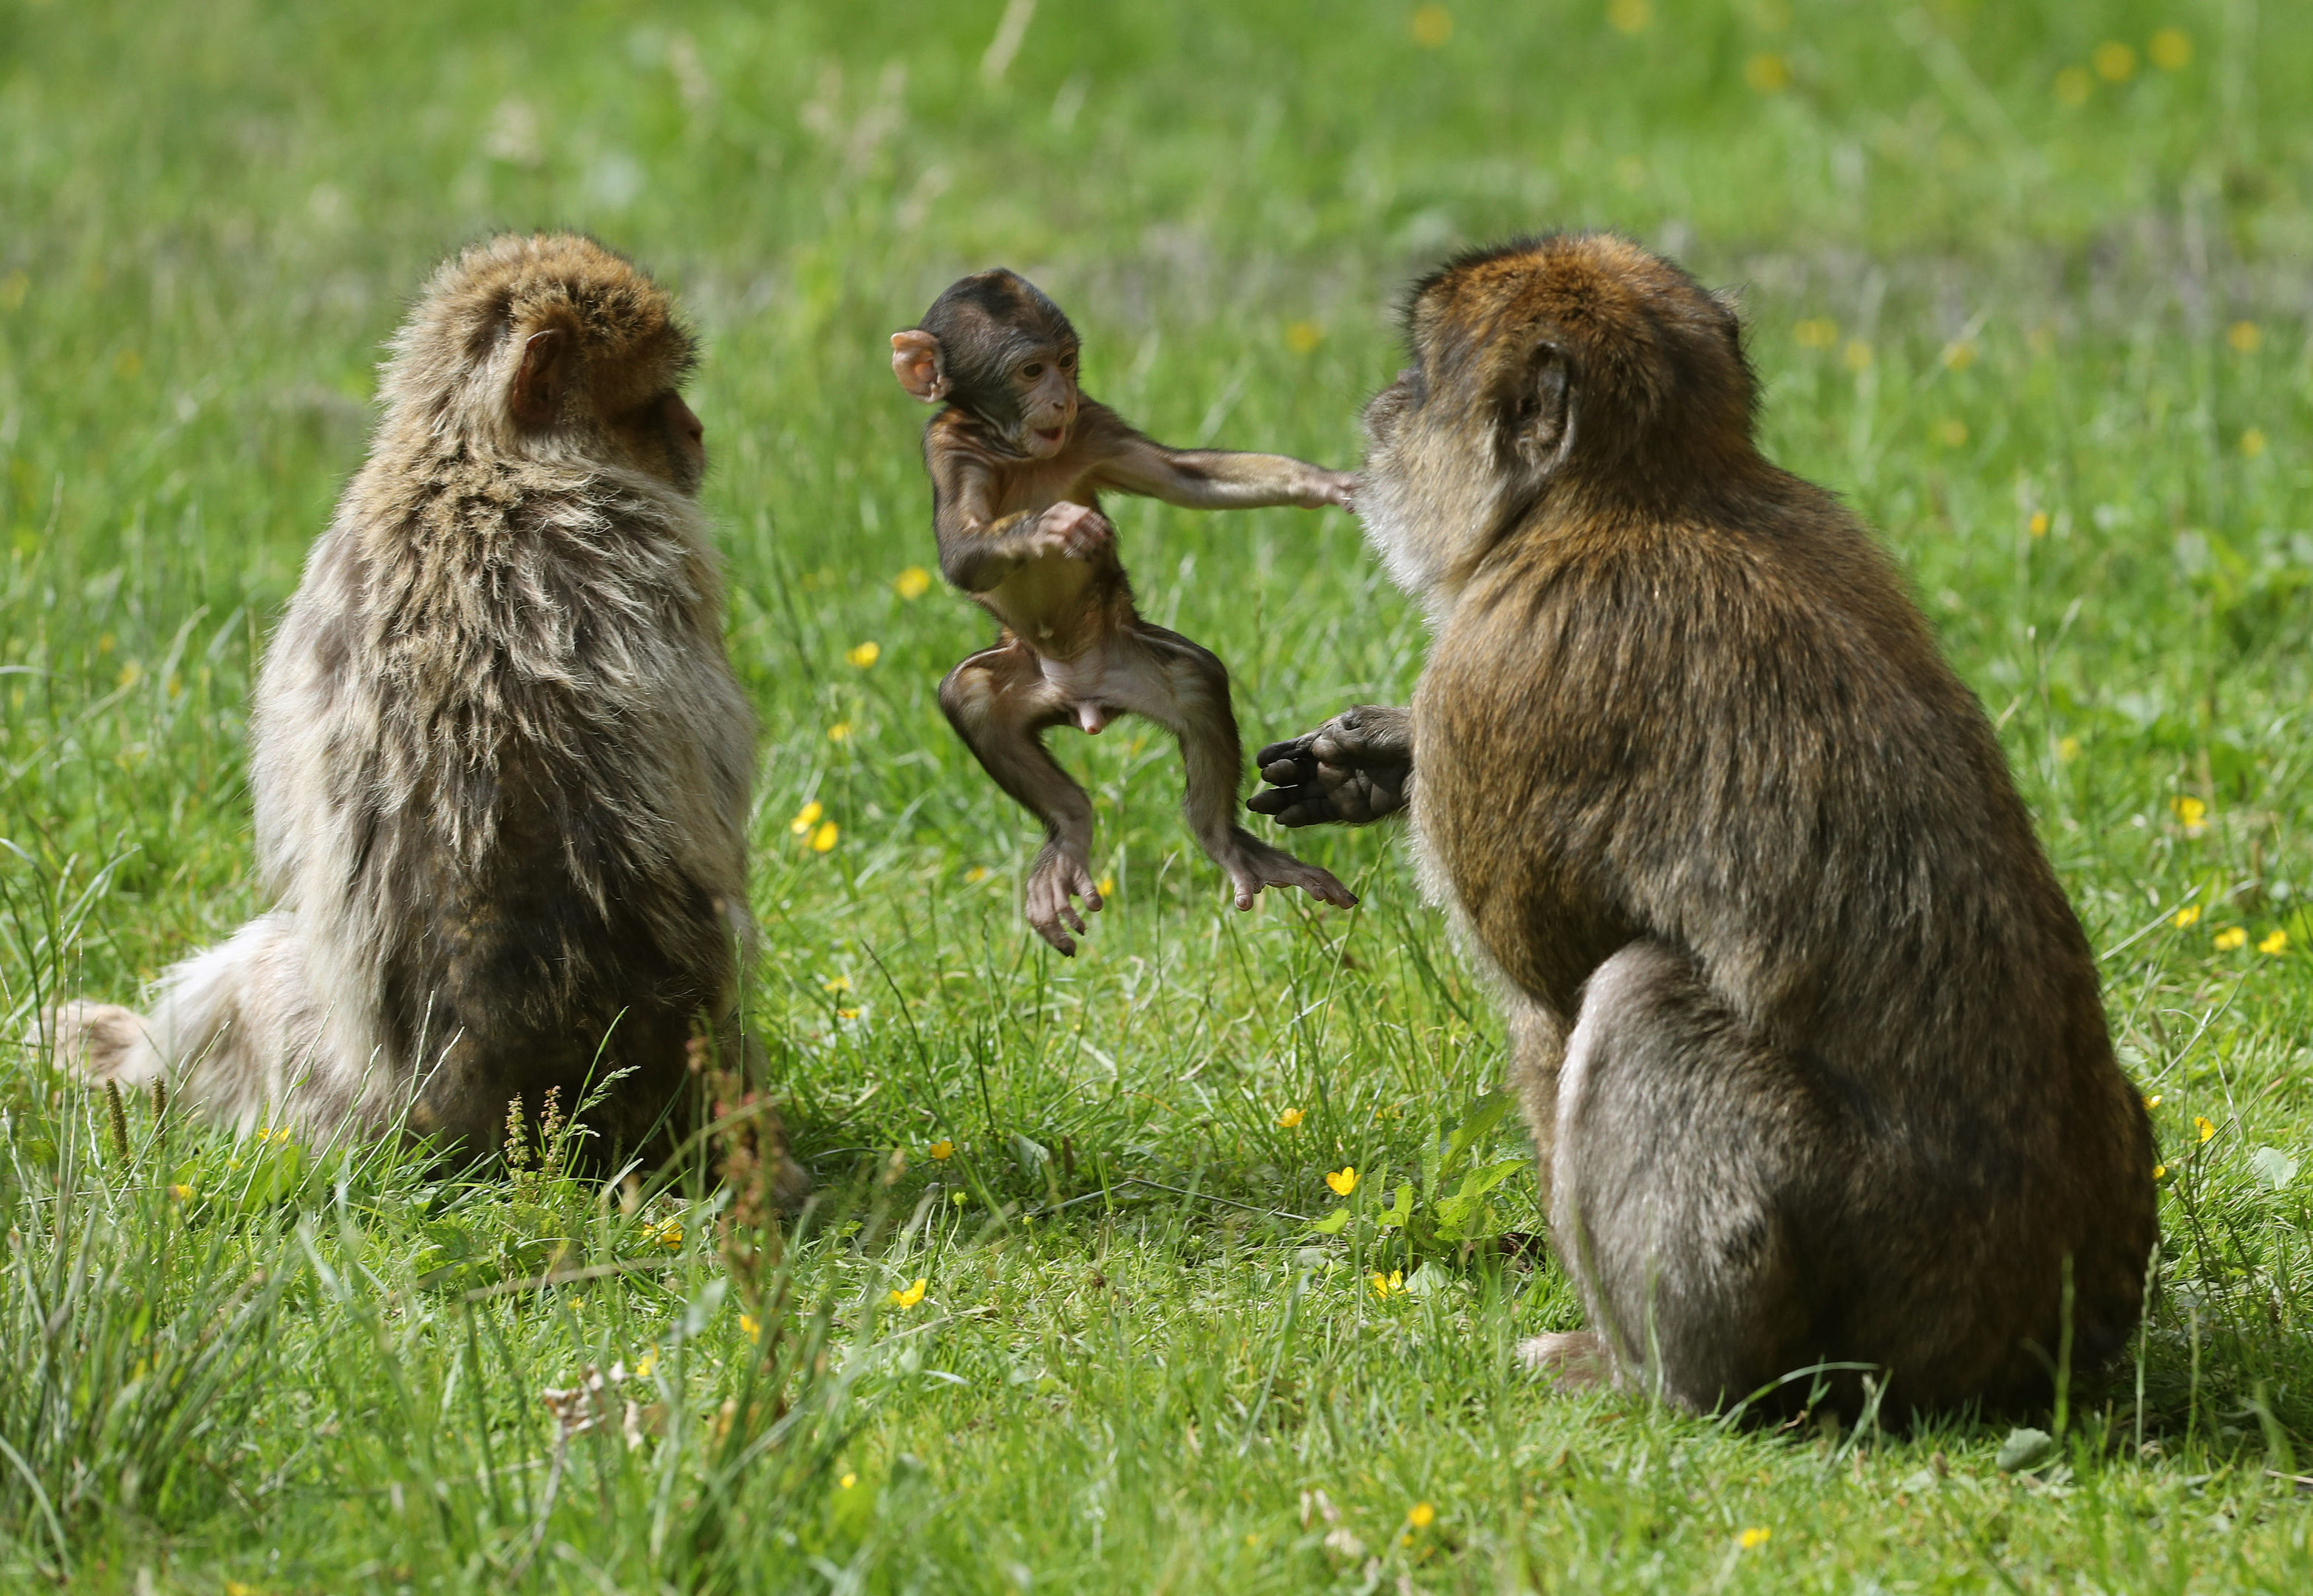 does safari park have monkeys